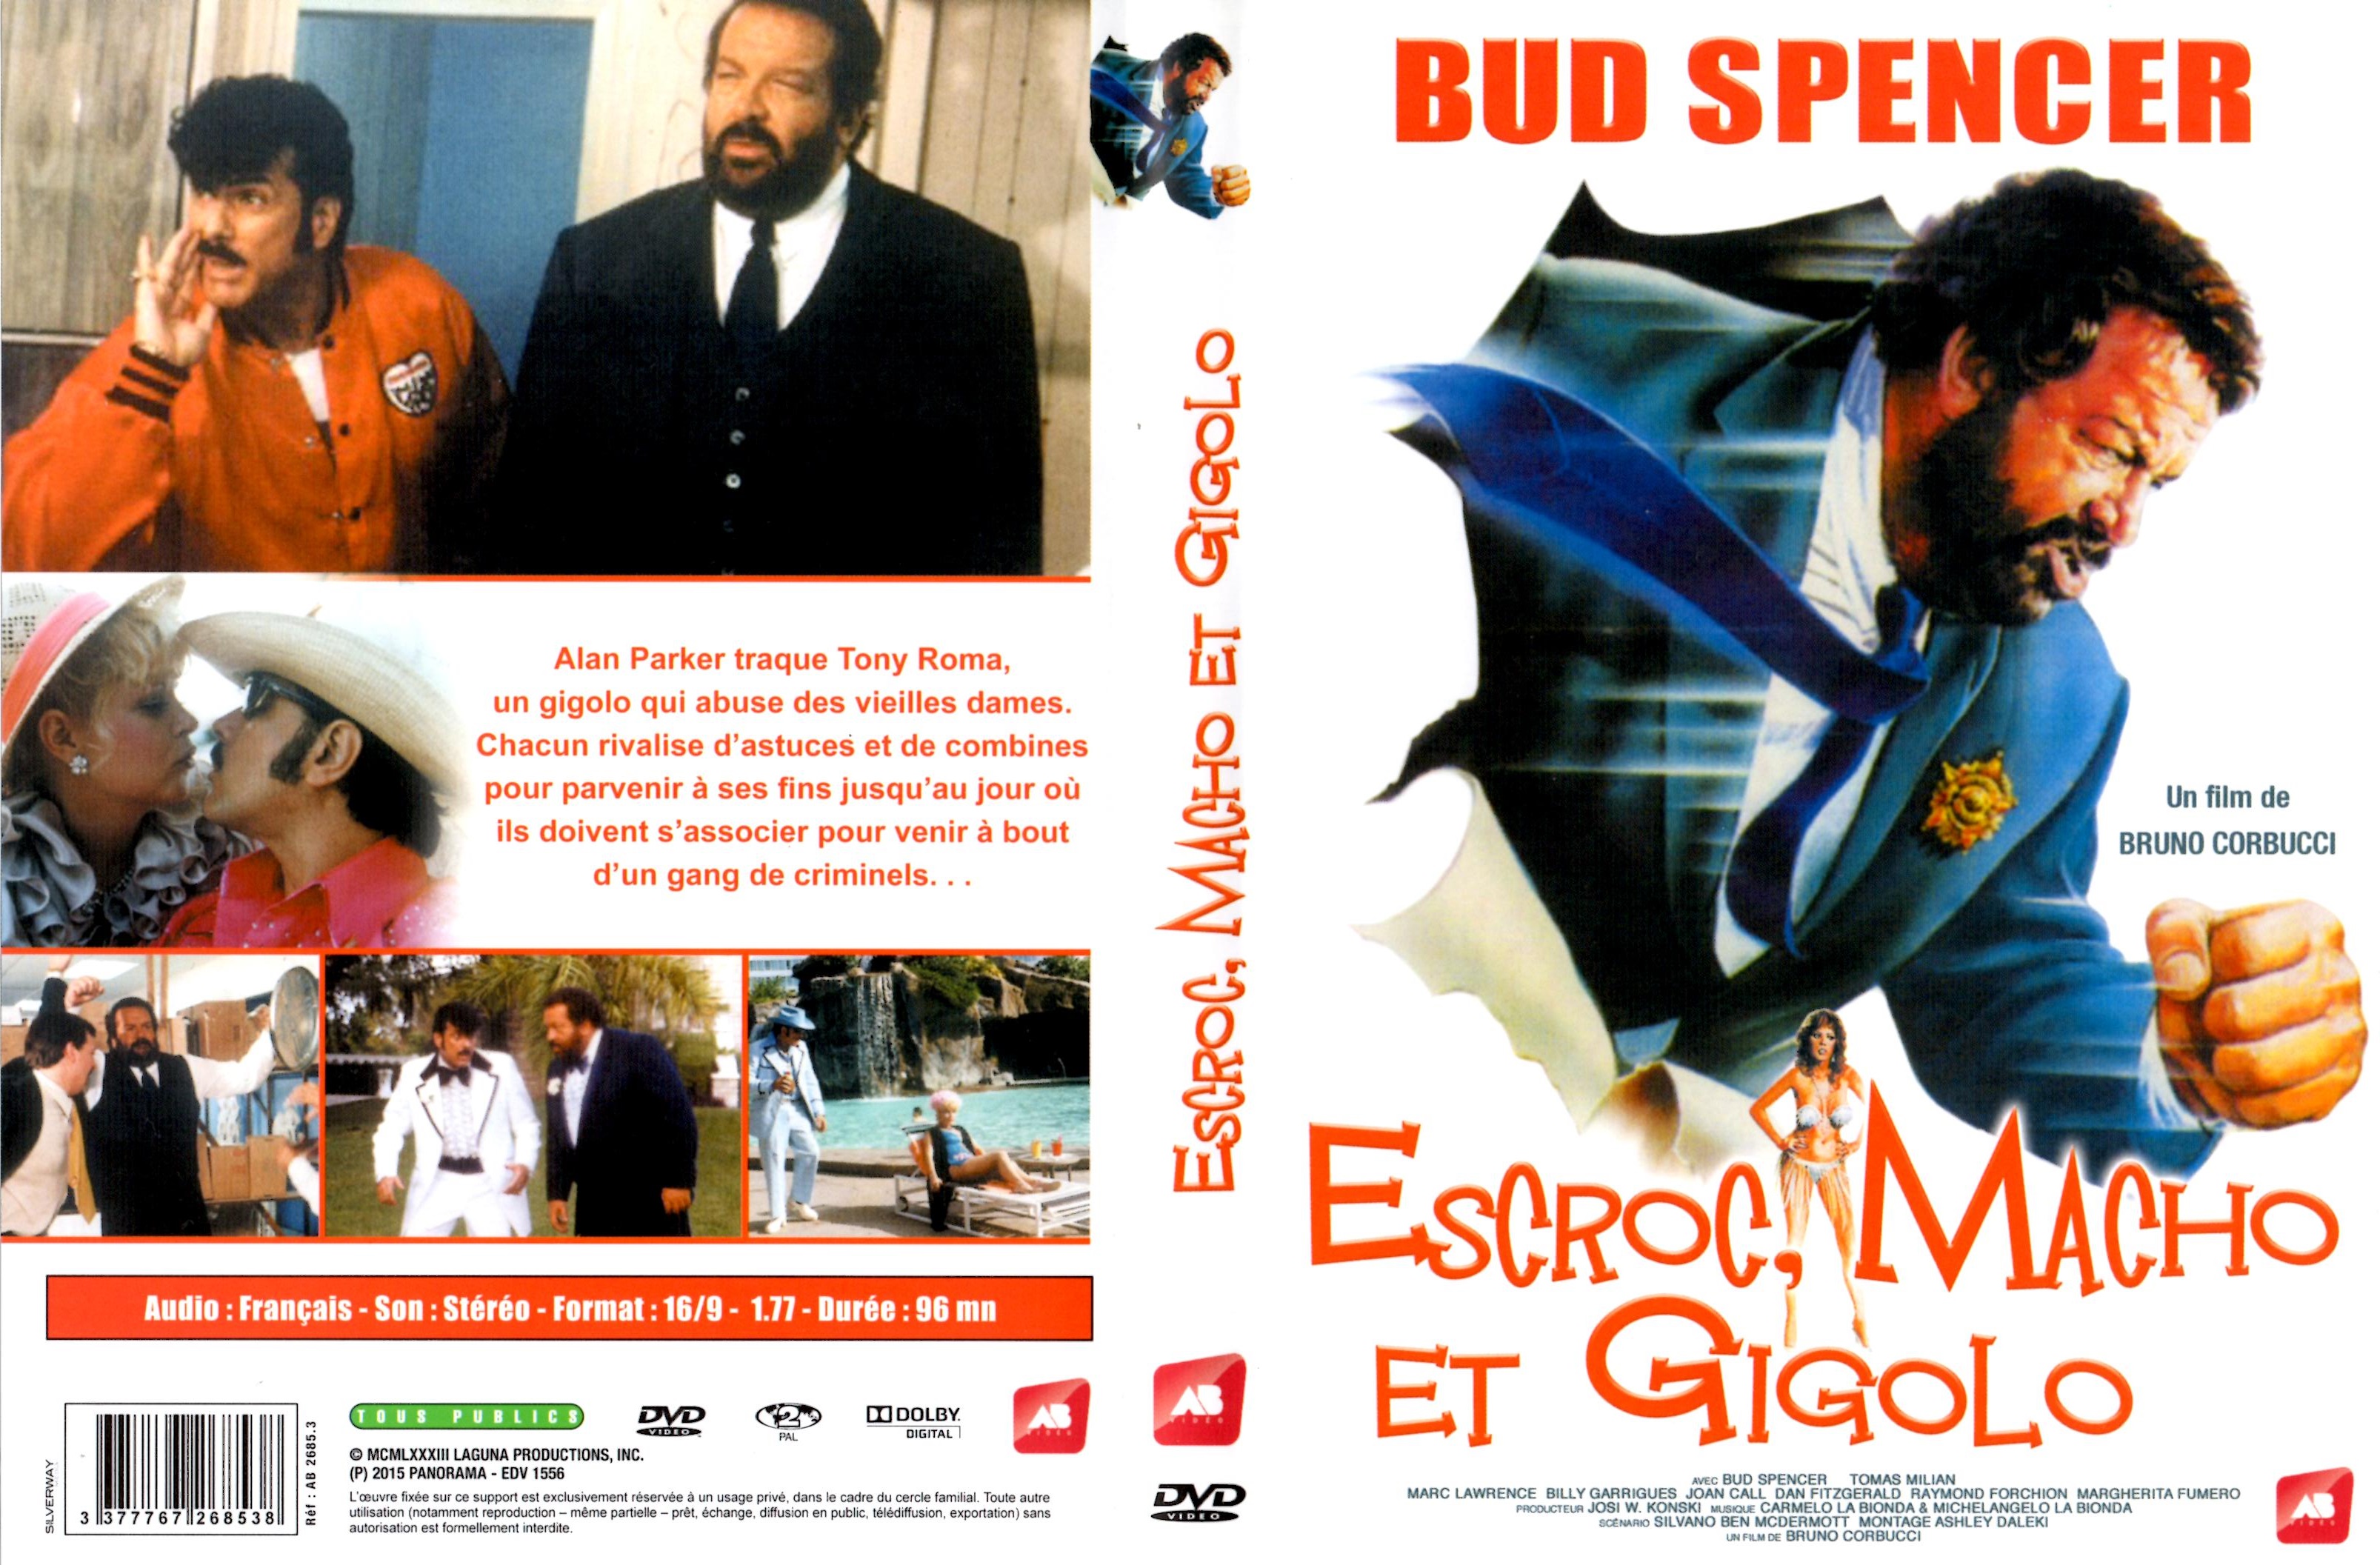 Jaquette DVD Escroc macho et gigolo v2